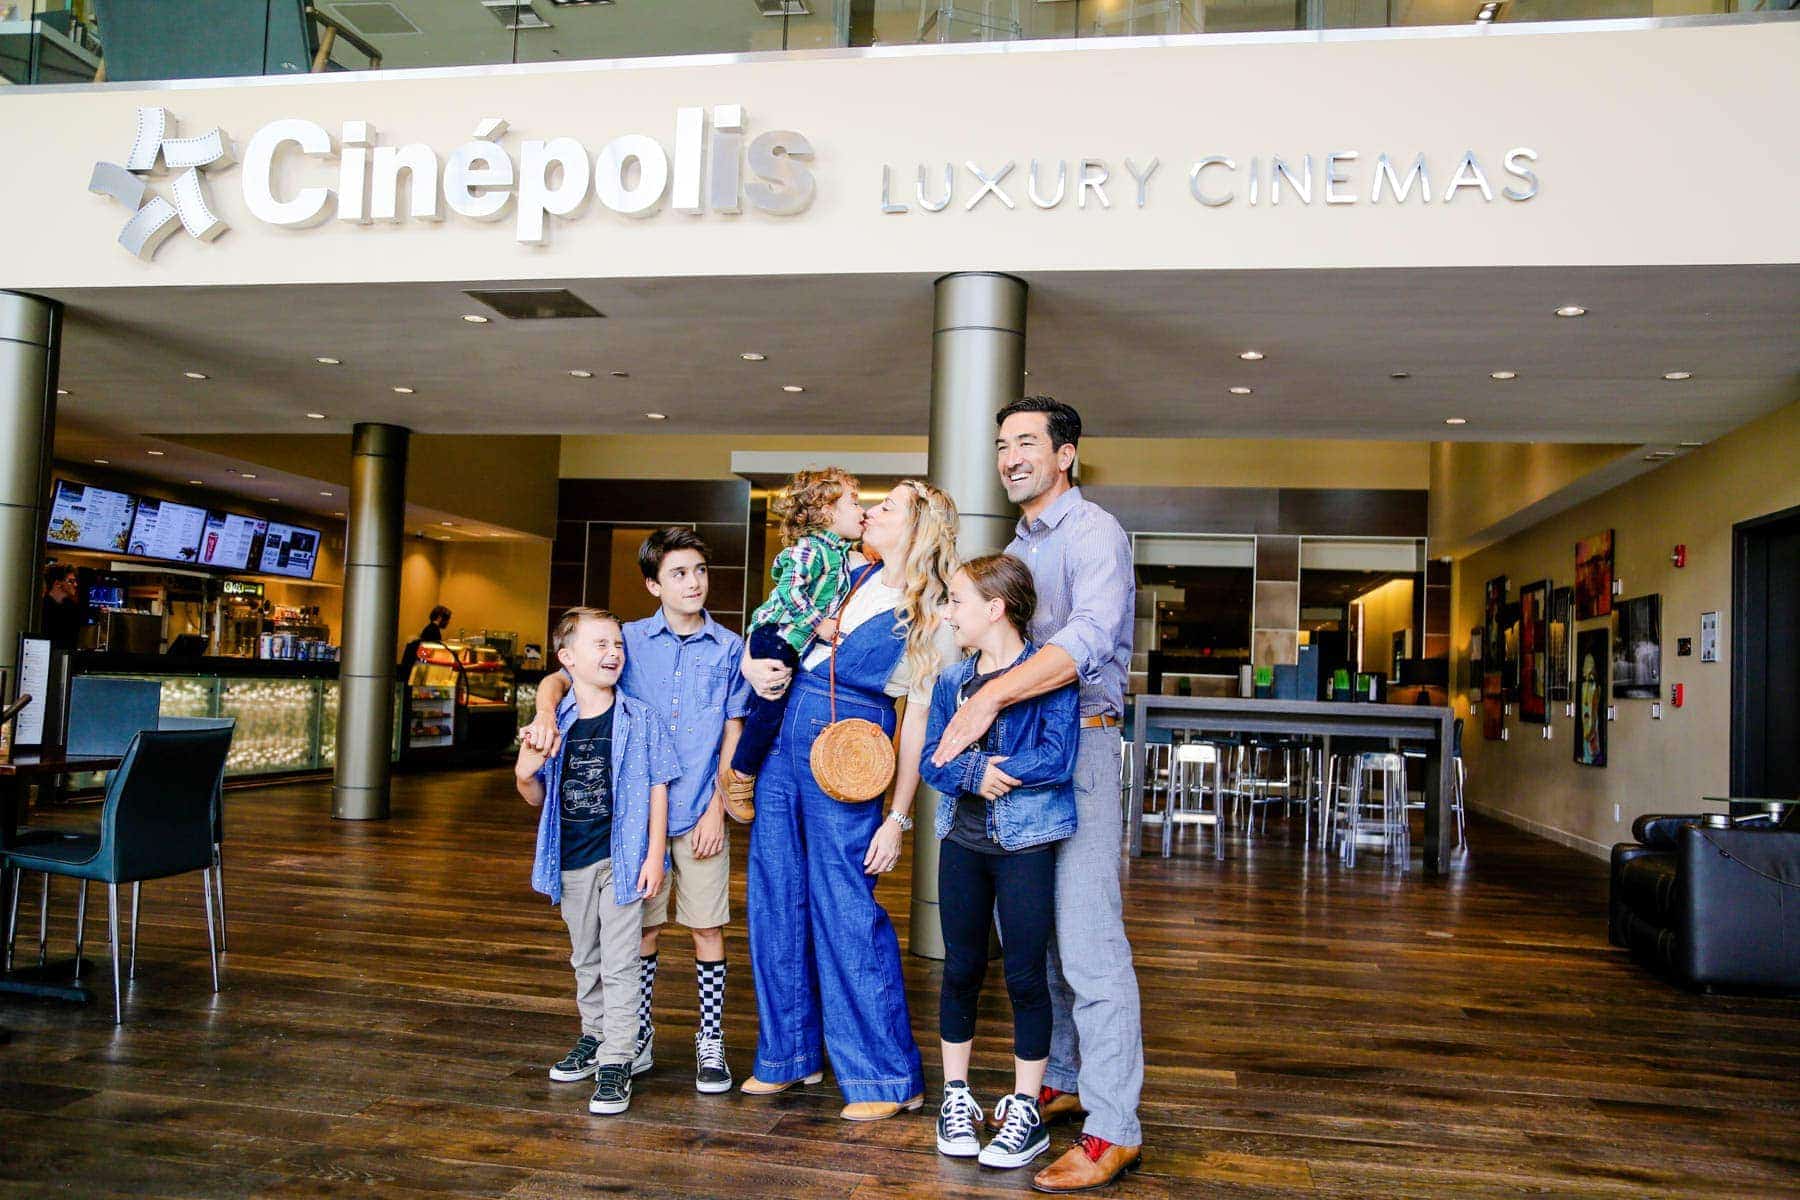 Family Photo at Cinepolis Luxury Cinemas #movienight #cinepolis #familybonding #familylove 